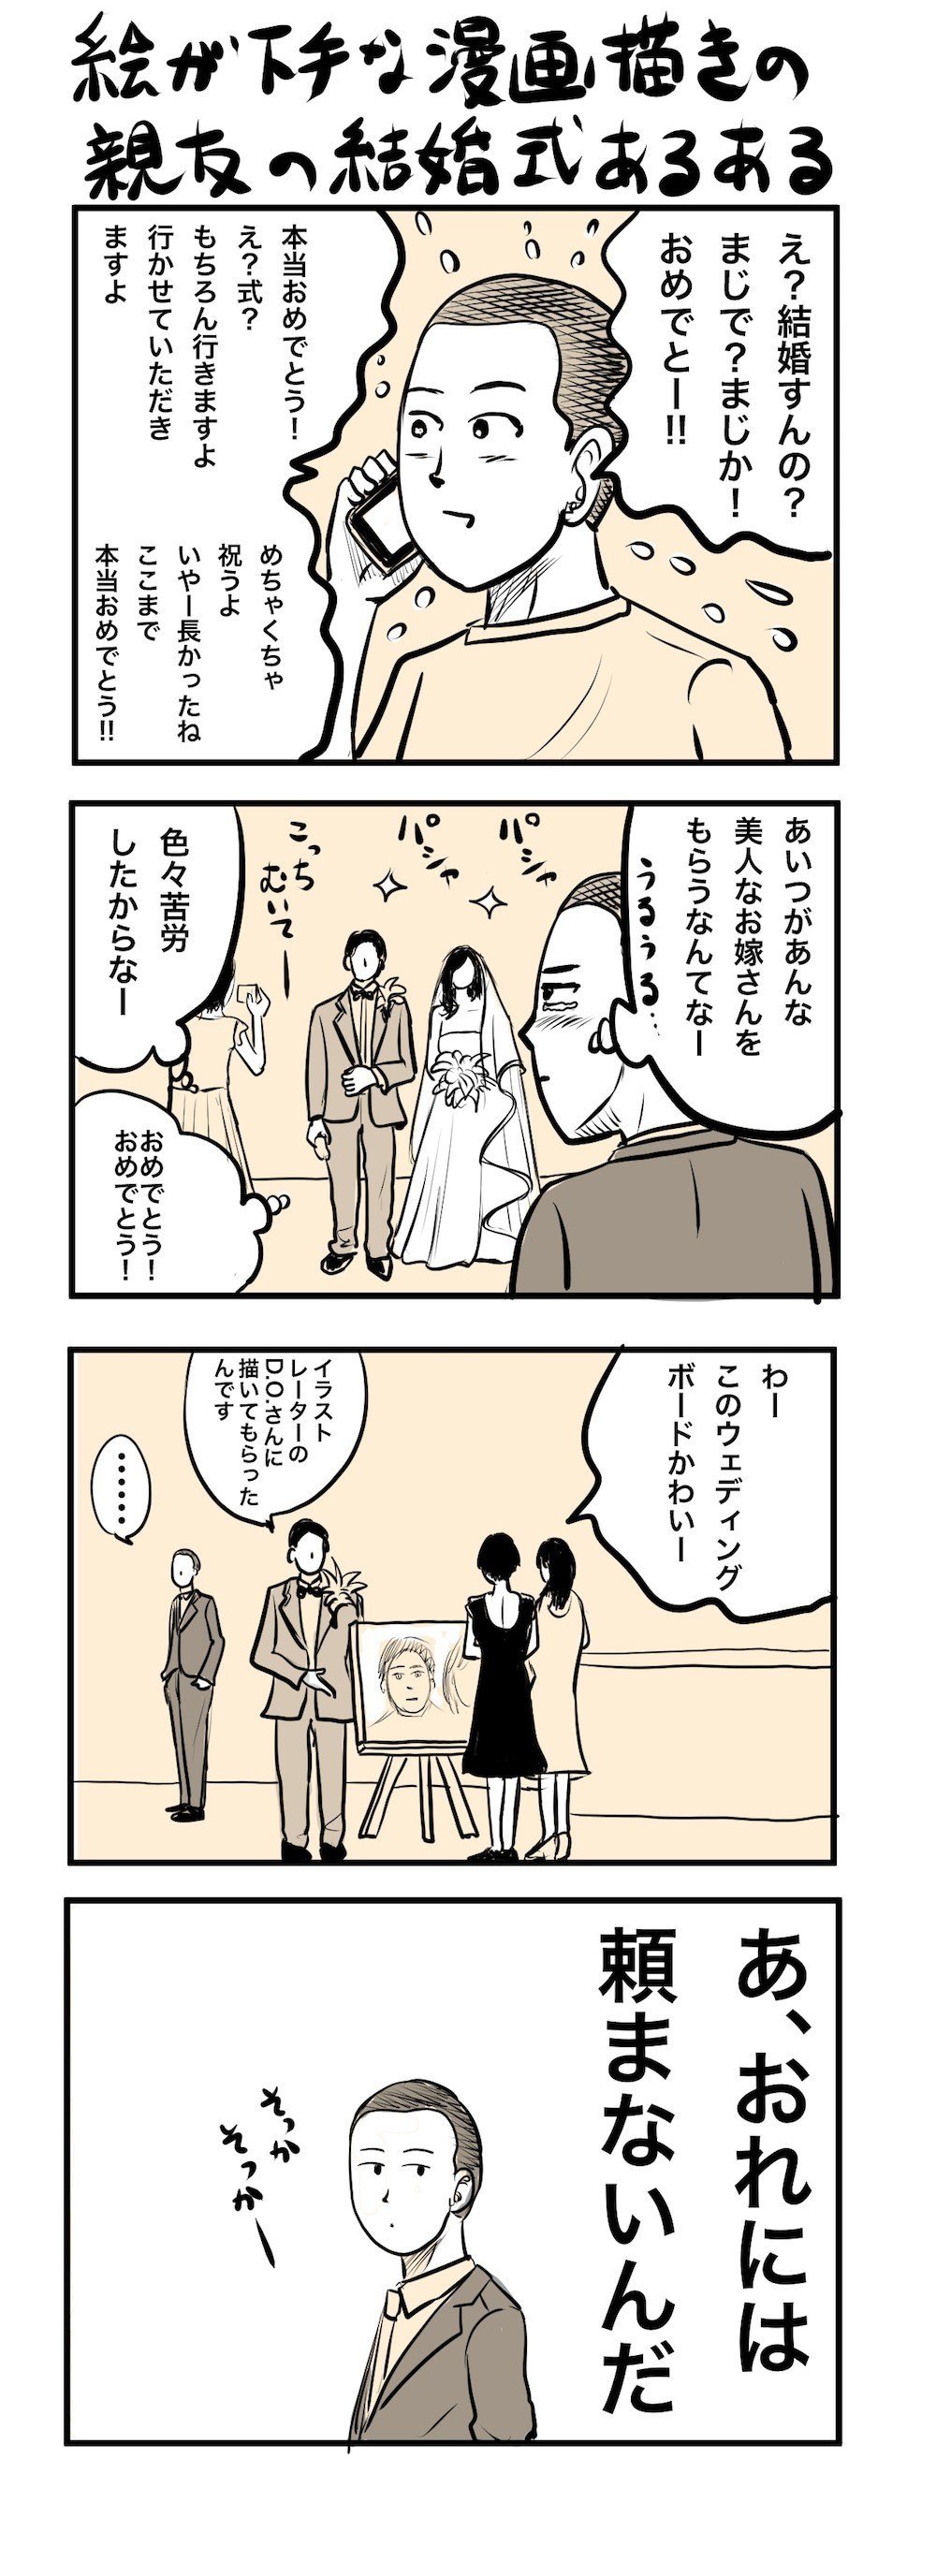 絵が下手な漫画描きの親友の結婚式あるある 吉田貴司 Note